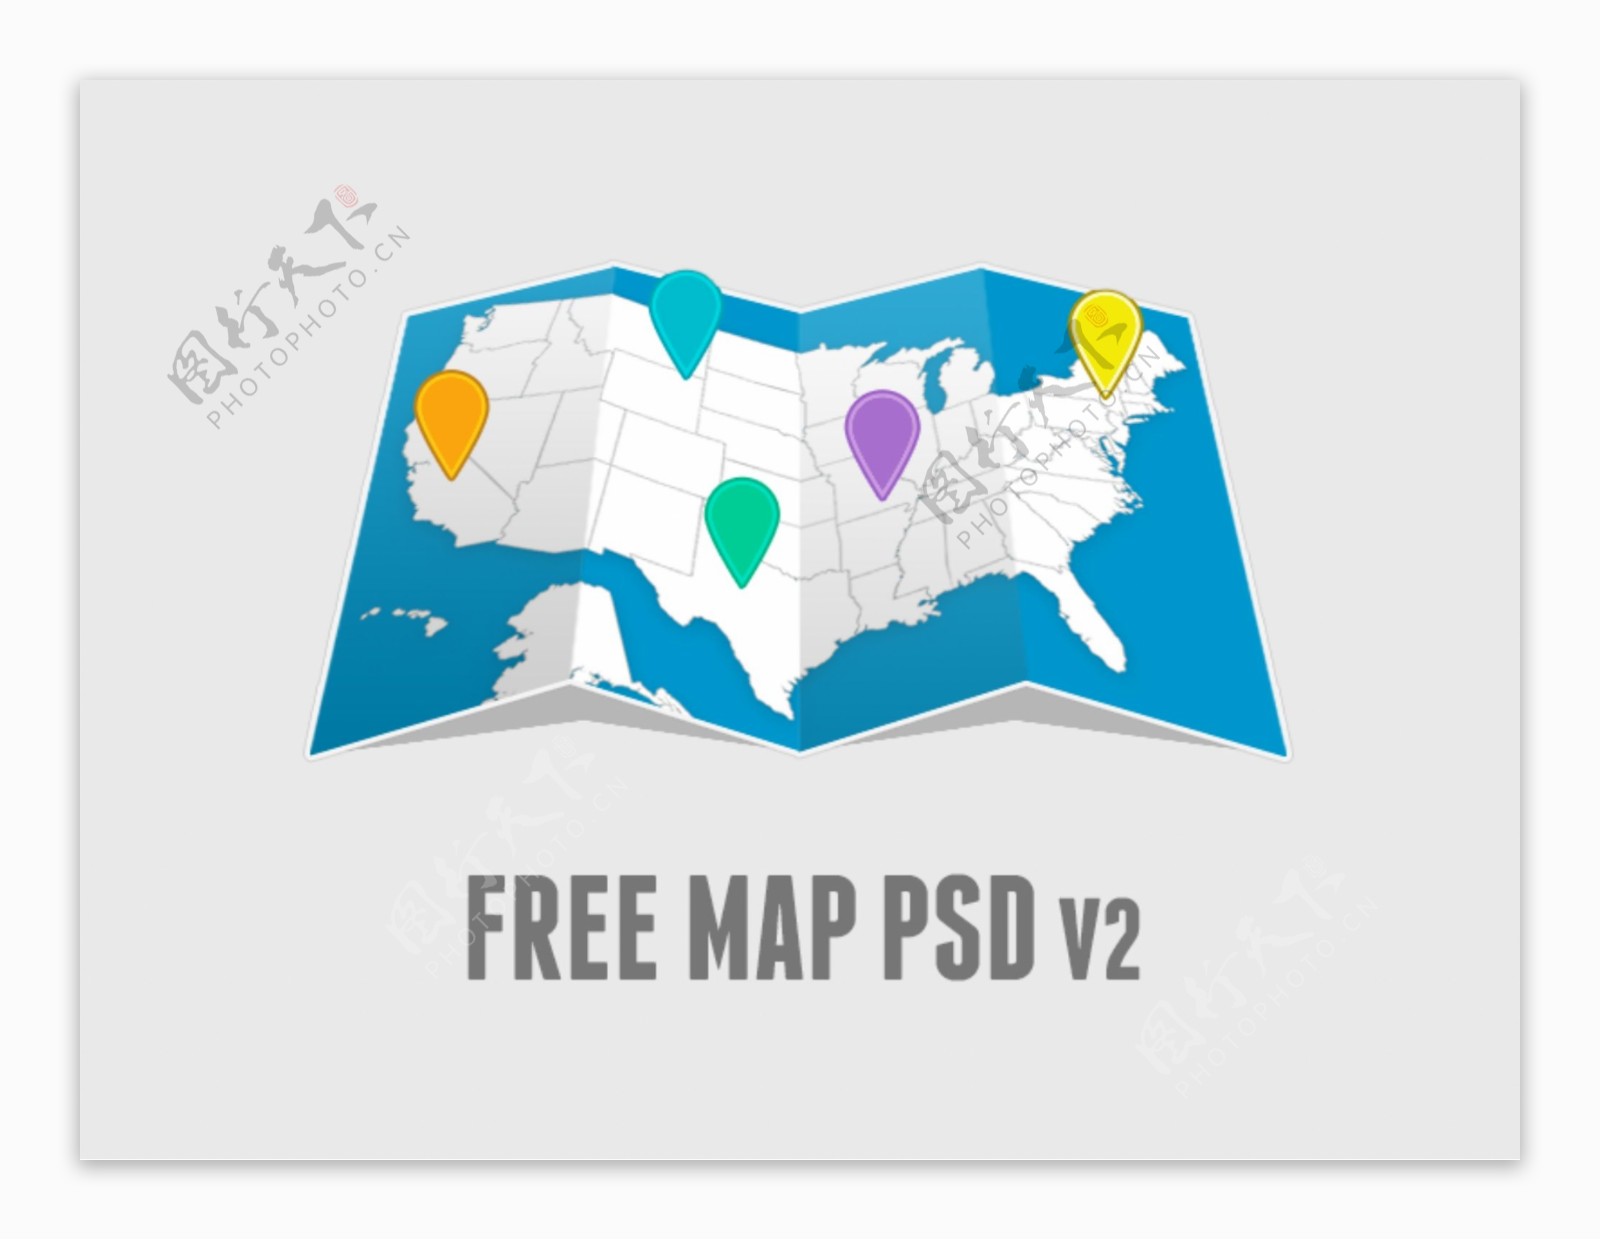 很漂亮的扁平风格的地图图标PSD下载